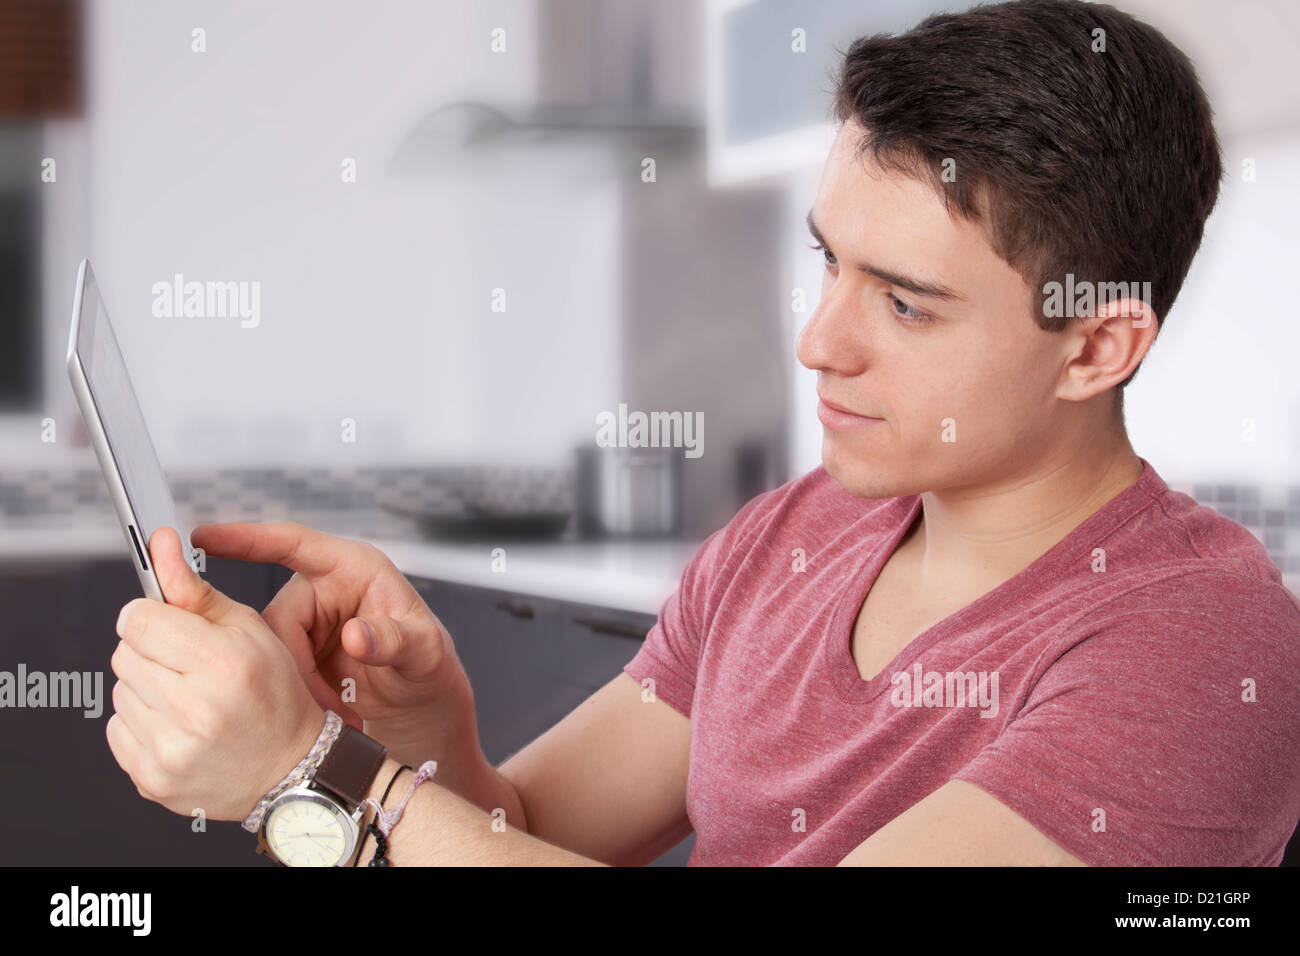 Junger Mann mit einem digitalen Tablet-Bildschirm oder Monitor zu betrachten. Befindet sich in einer modernen Küche. Stockfoto